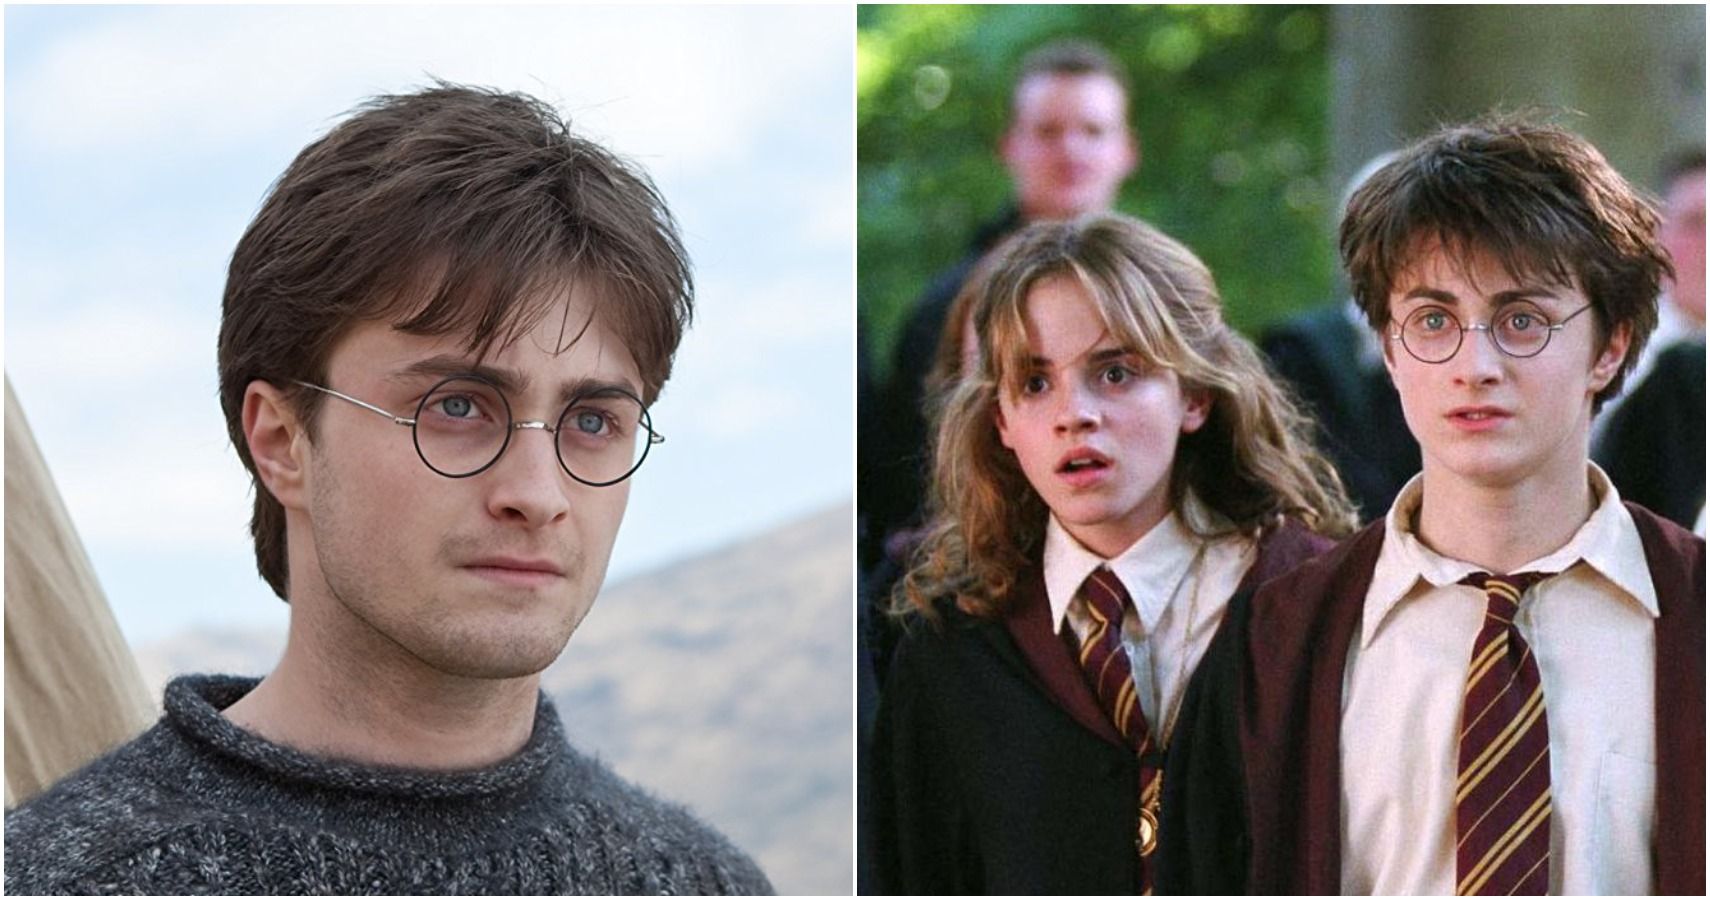 https://static1.srcdn.com/wordpress/wp-content/uploads/2020/09/Harry-Potter-Harry-Harry-Potter-and-the-Deathly-Hallows-Harry-and-Hermione-Harry-Potter-and-the-Prisoner-Of-Azkaban.jpg